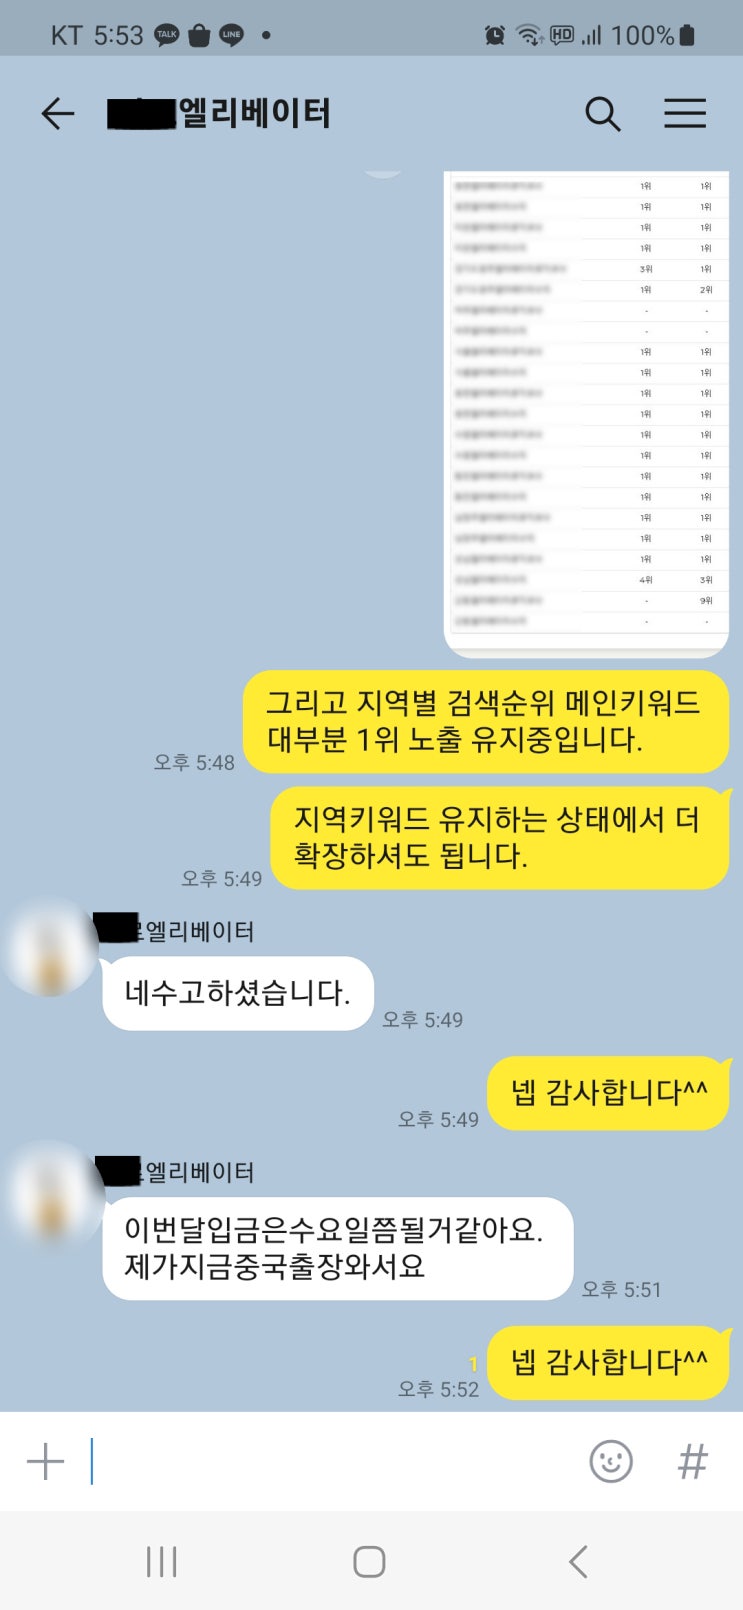 블로그운영대행 신규업체 첫 달 결과 보고